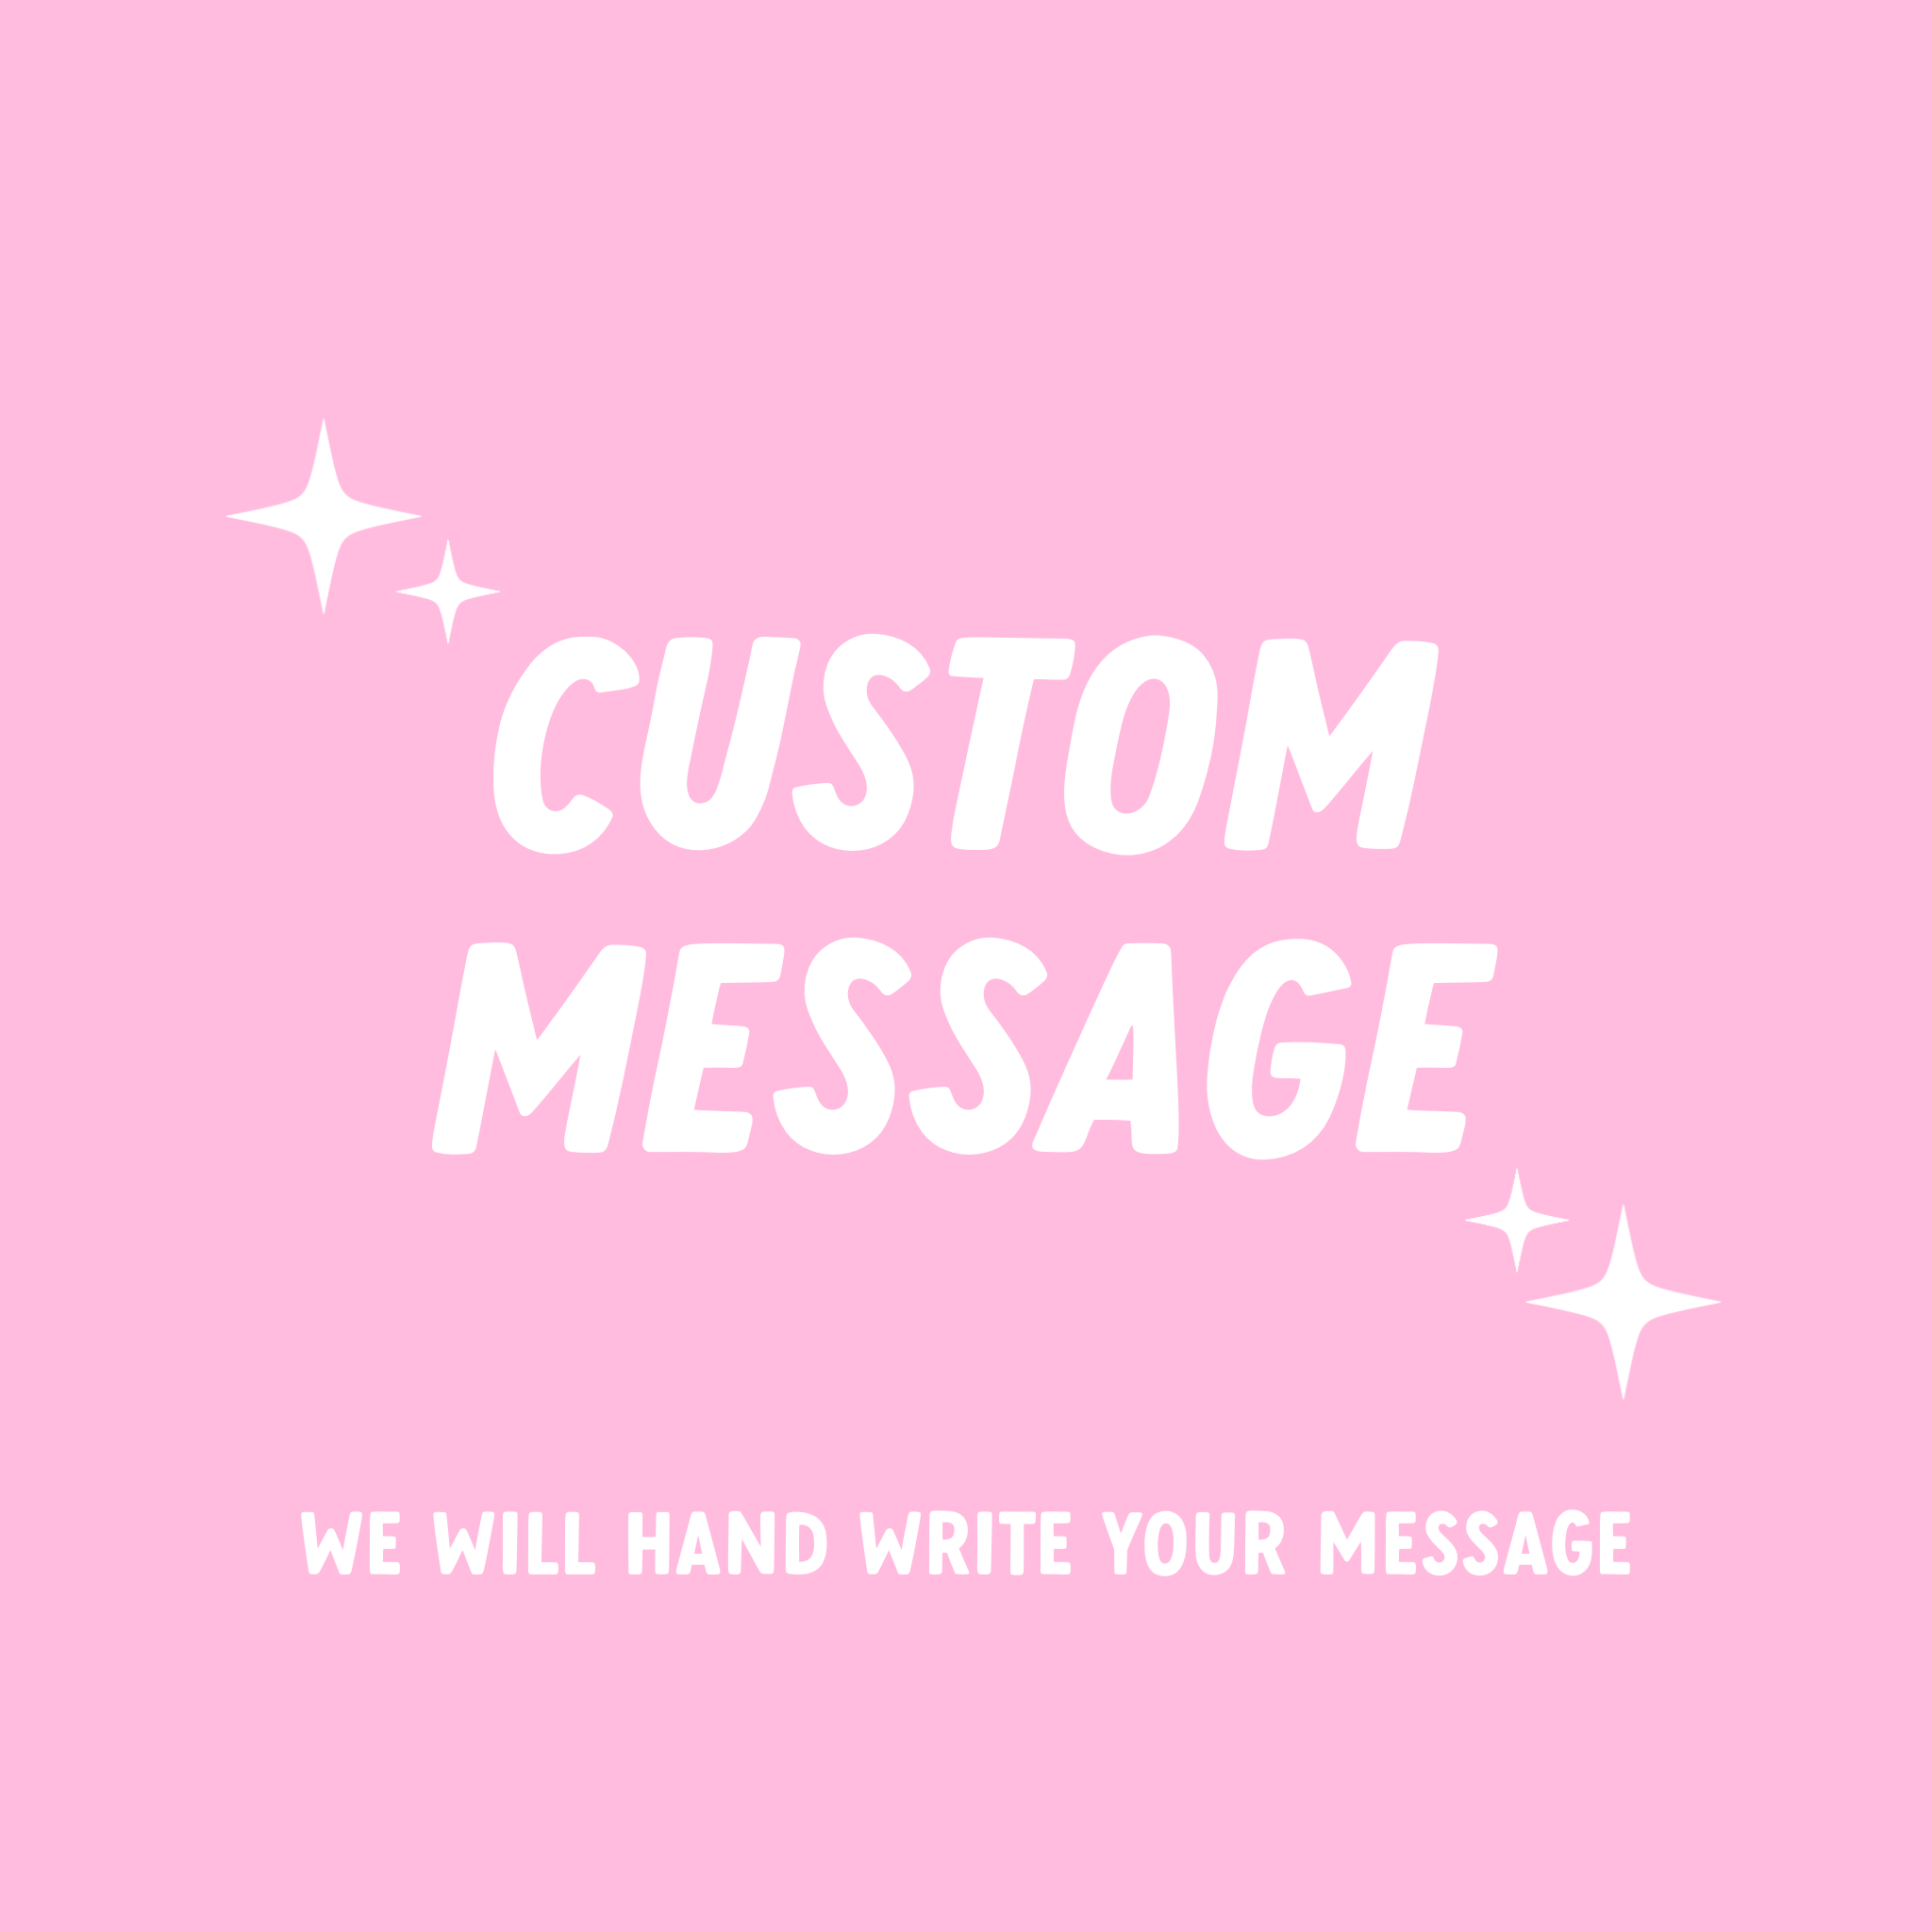 Custom message